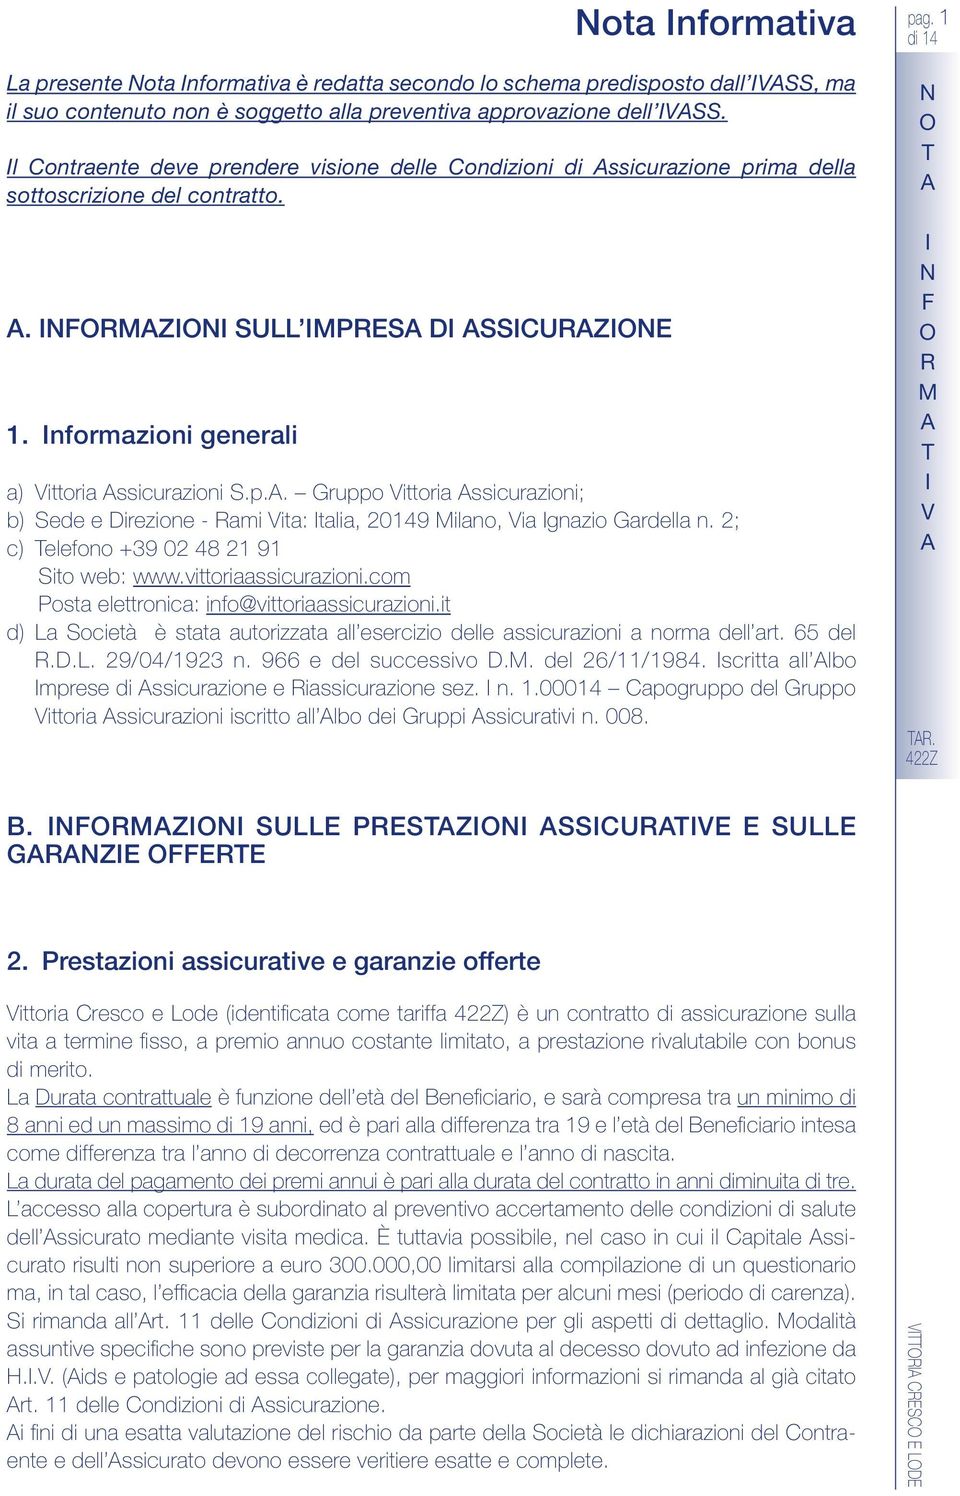 2; c) elefono +39 02 48 21 91 ito web: www.vittoriaassicurazioni.com Posta elettronica: info@vittoriaassicurazioni.